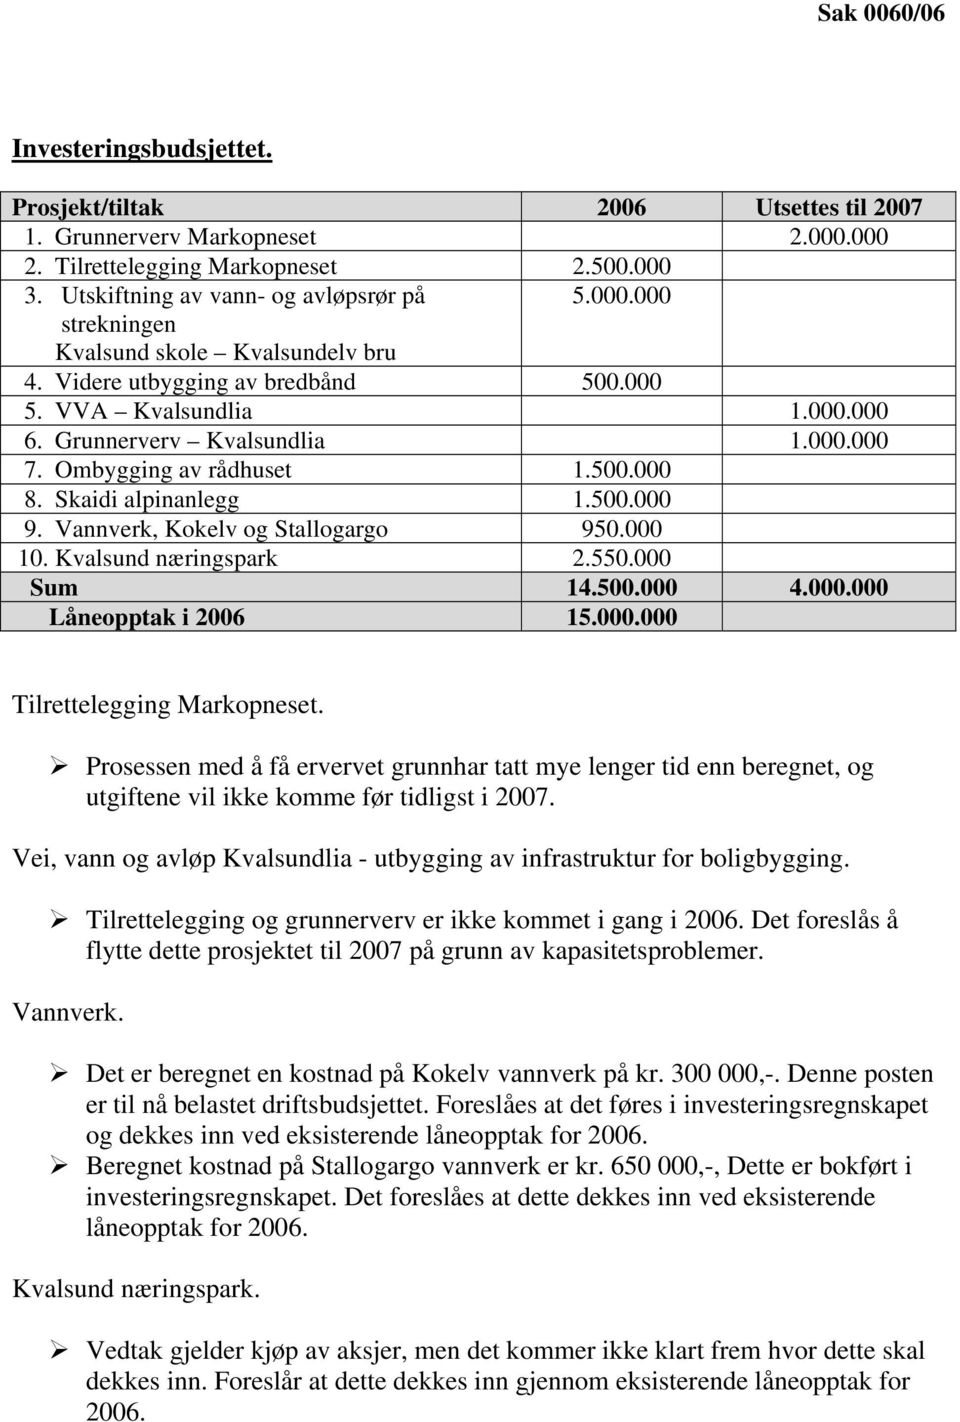 Vannverk, Kokelv og Stallogargo 950.000 10. Kvalsund næringspark 2.550.000 Sum 14.500.000 4.000.000 Låneopptak i 2006 15.000.000 Tilrettelegging Markopneset.